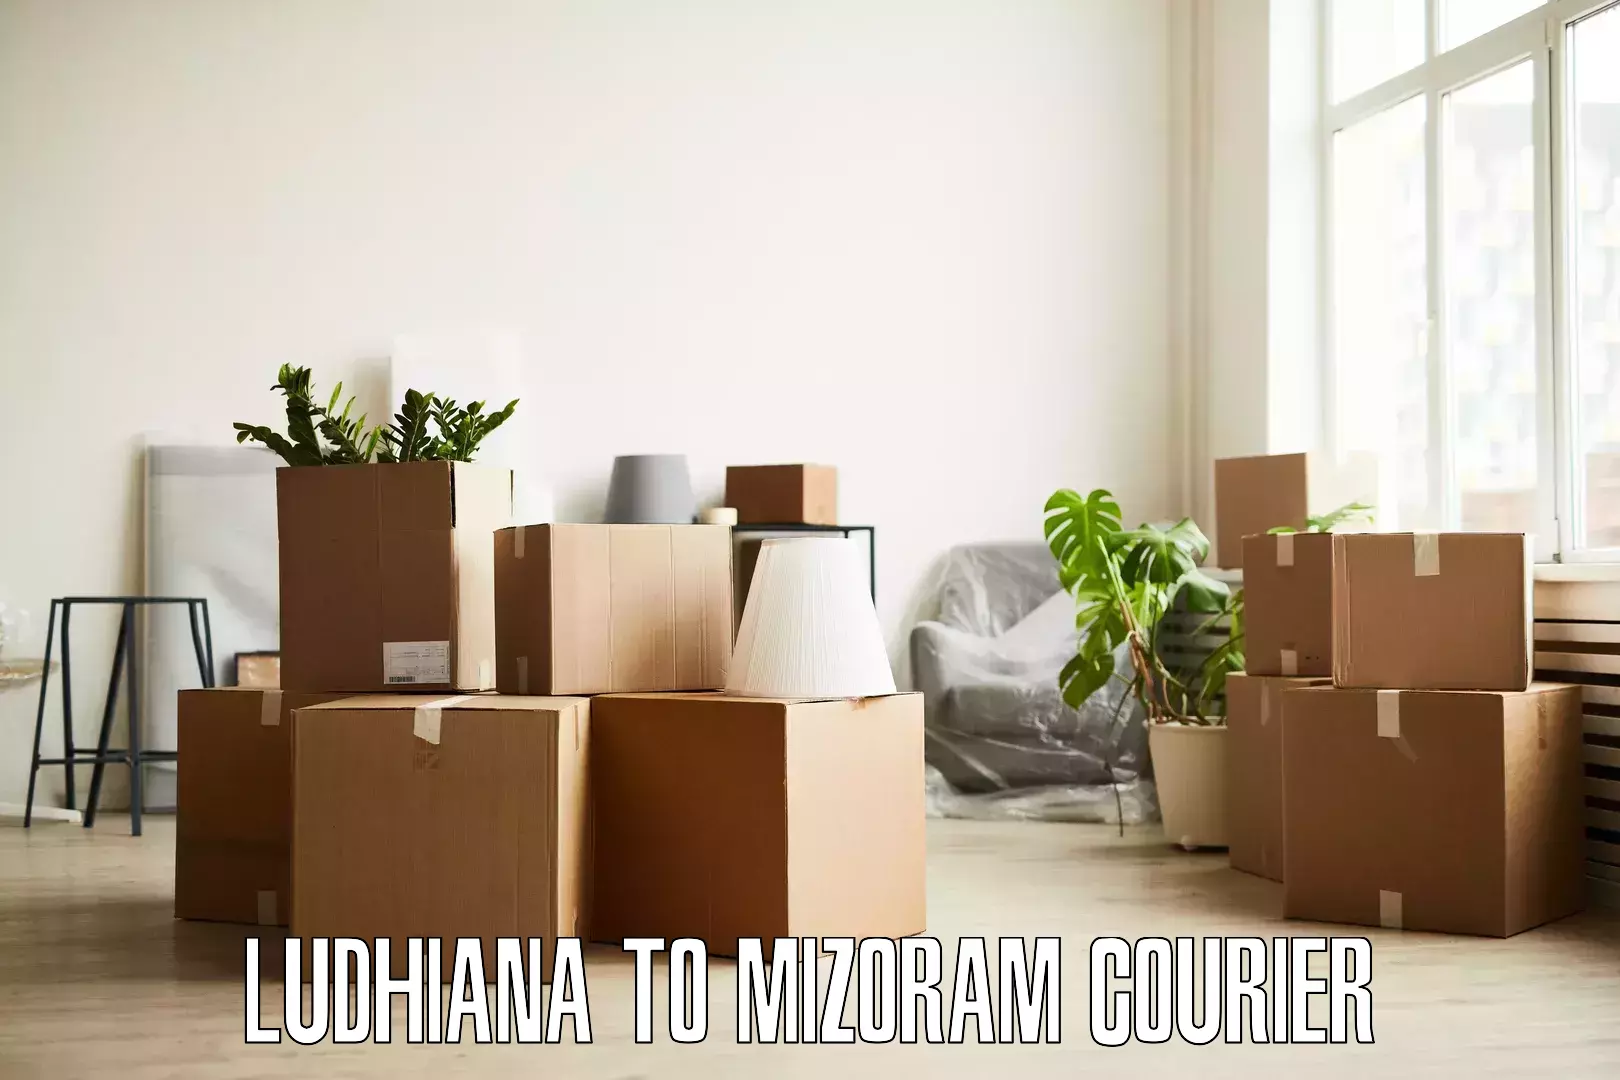 Efficient moving company Ludhiana to Siaha